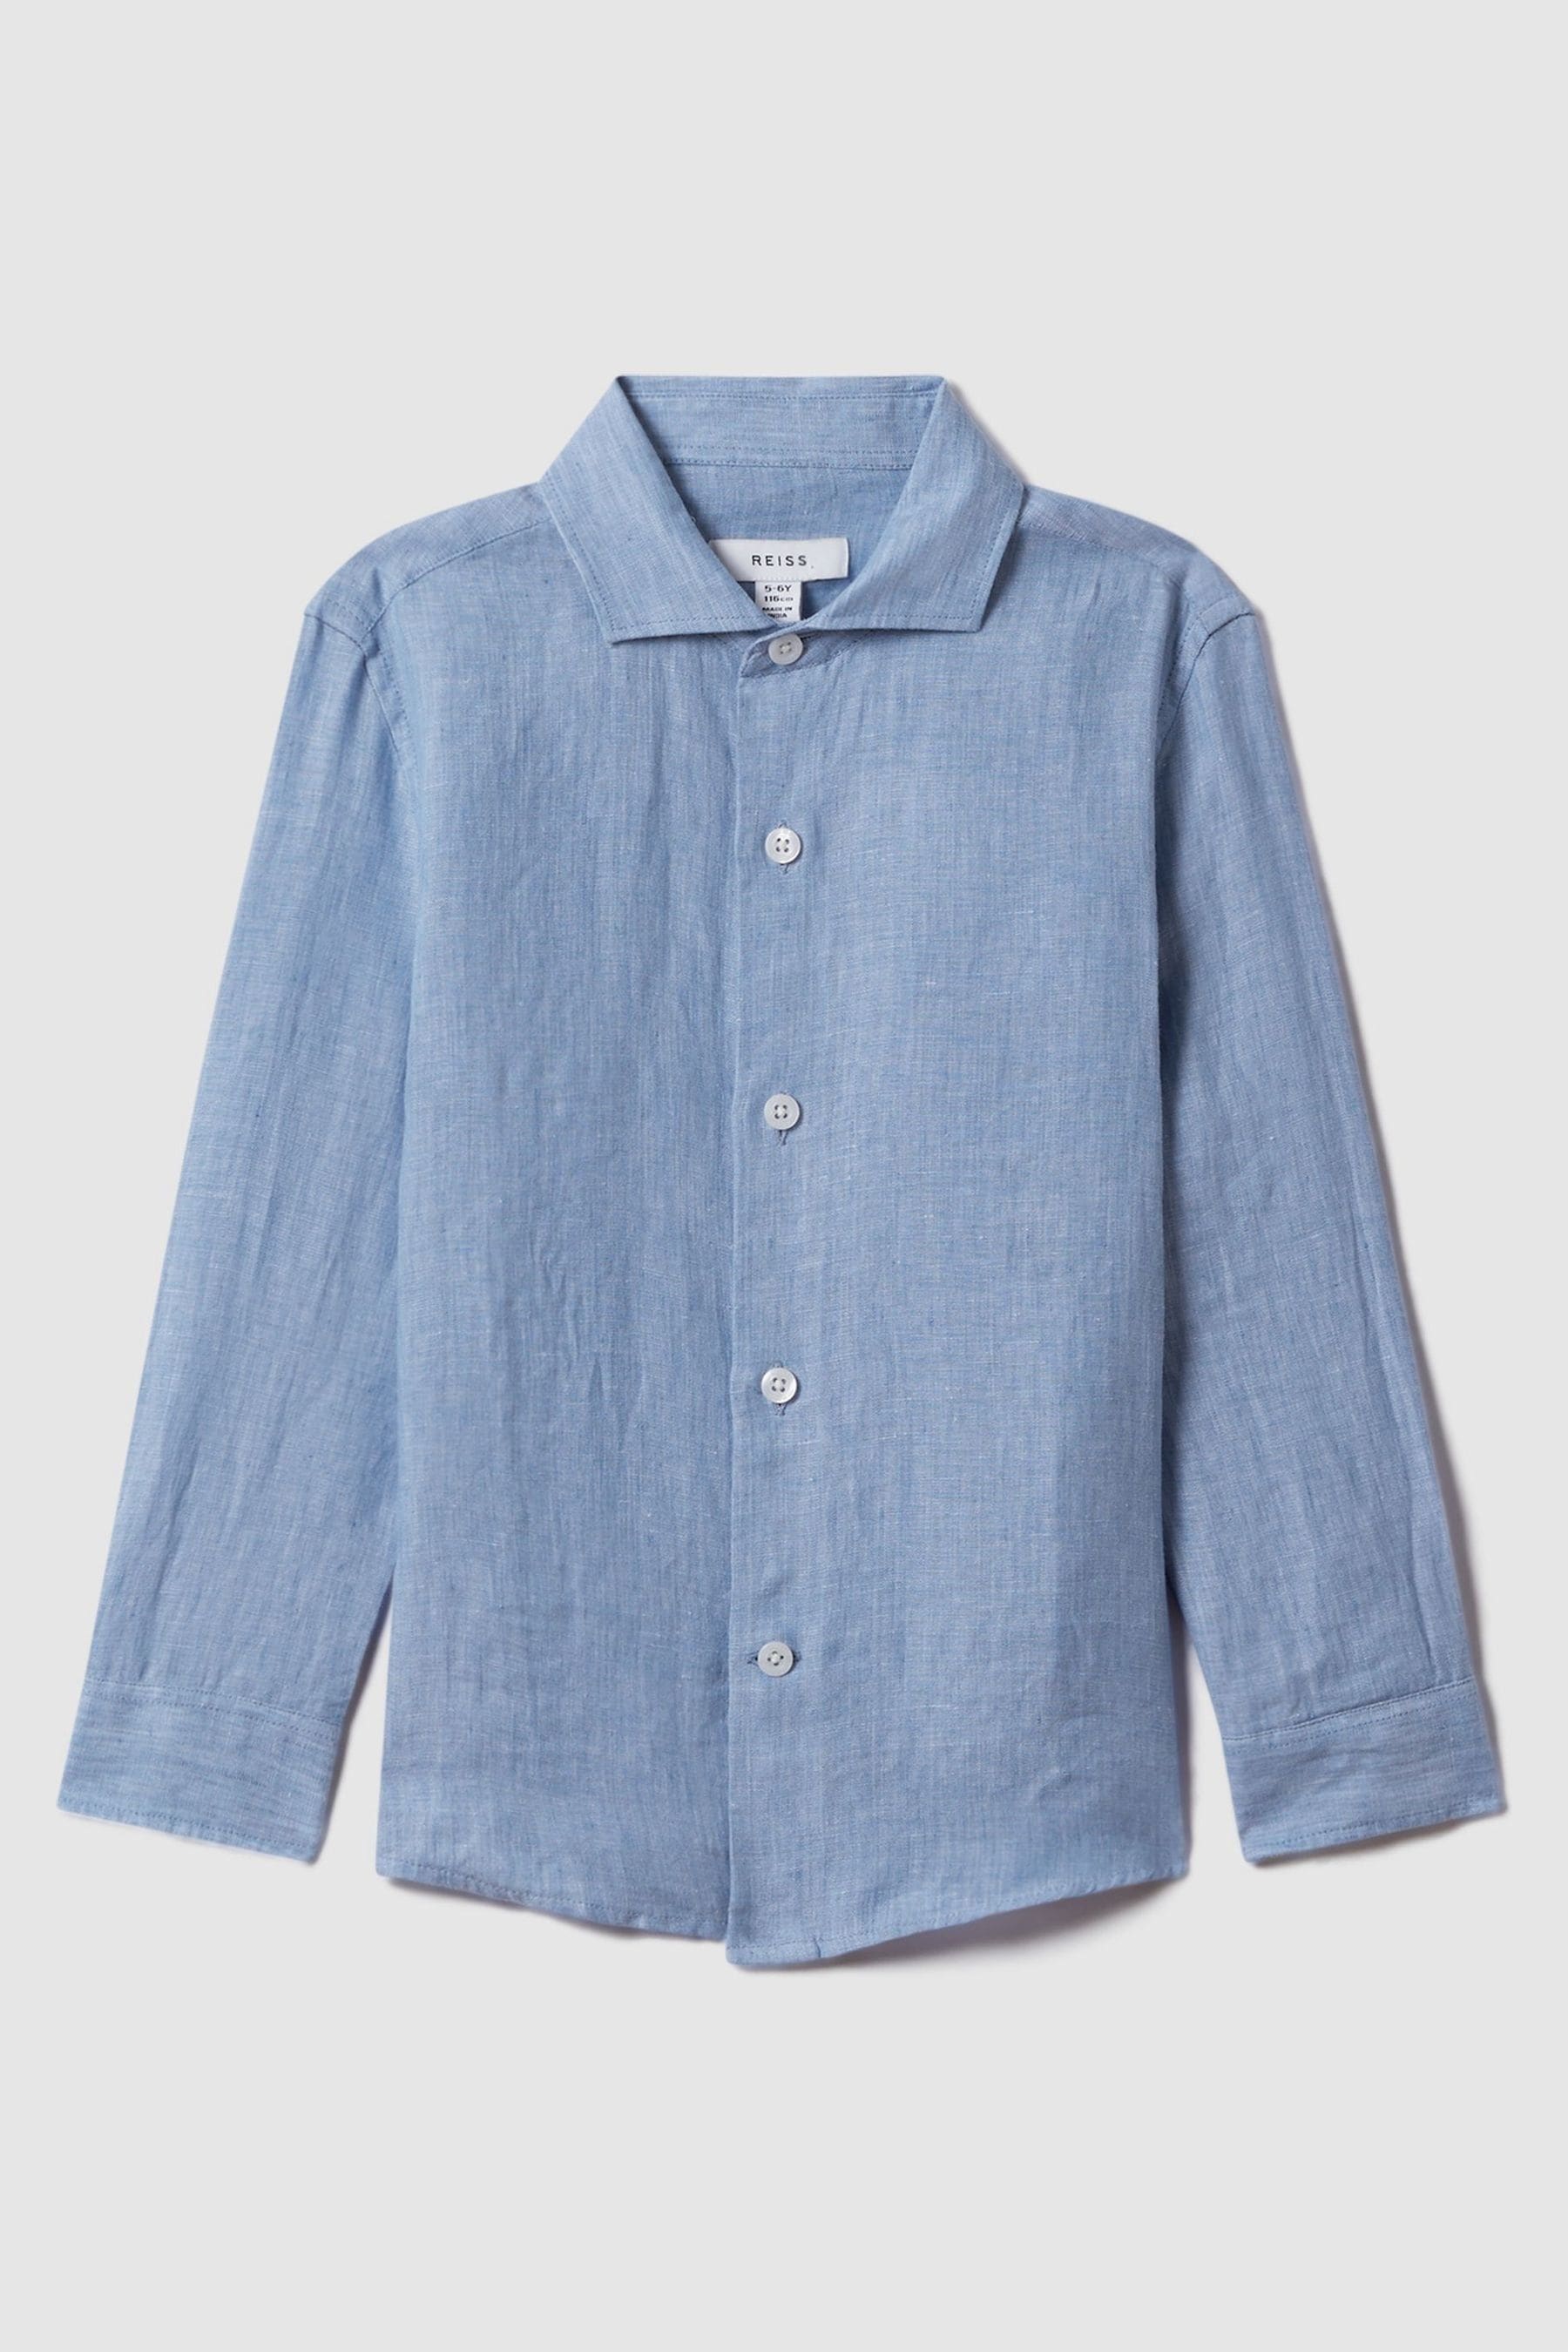 Reiss Kids' Ruban - Sky Blue Linen Cutaway Collar Shirt, Uk 13-14 Yrs